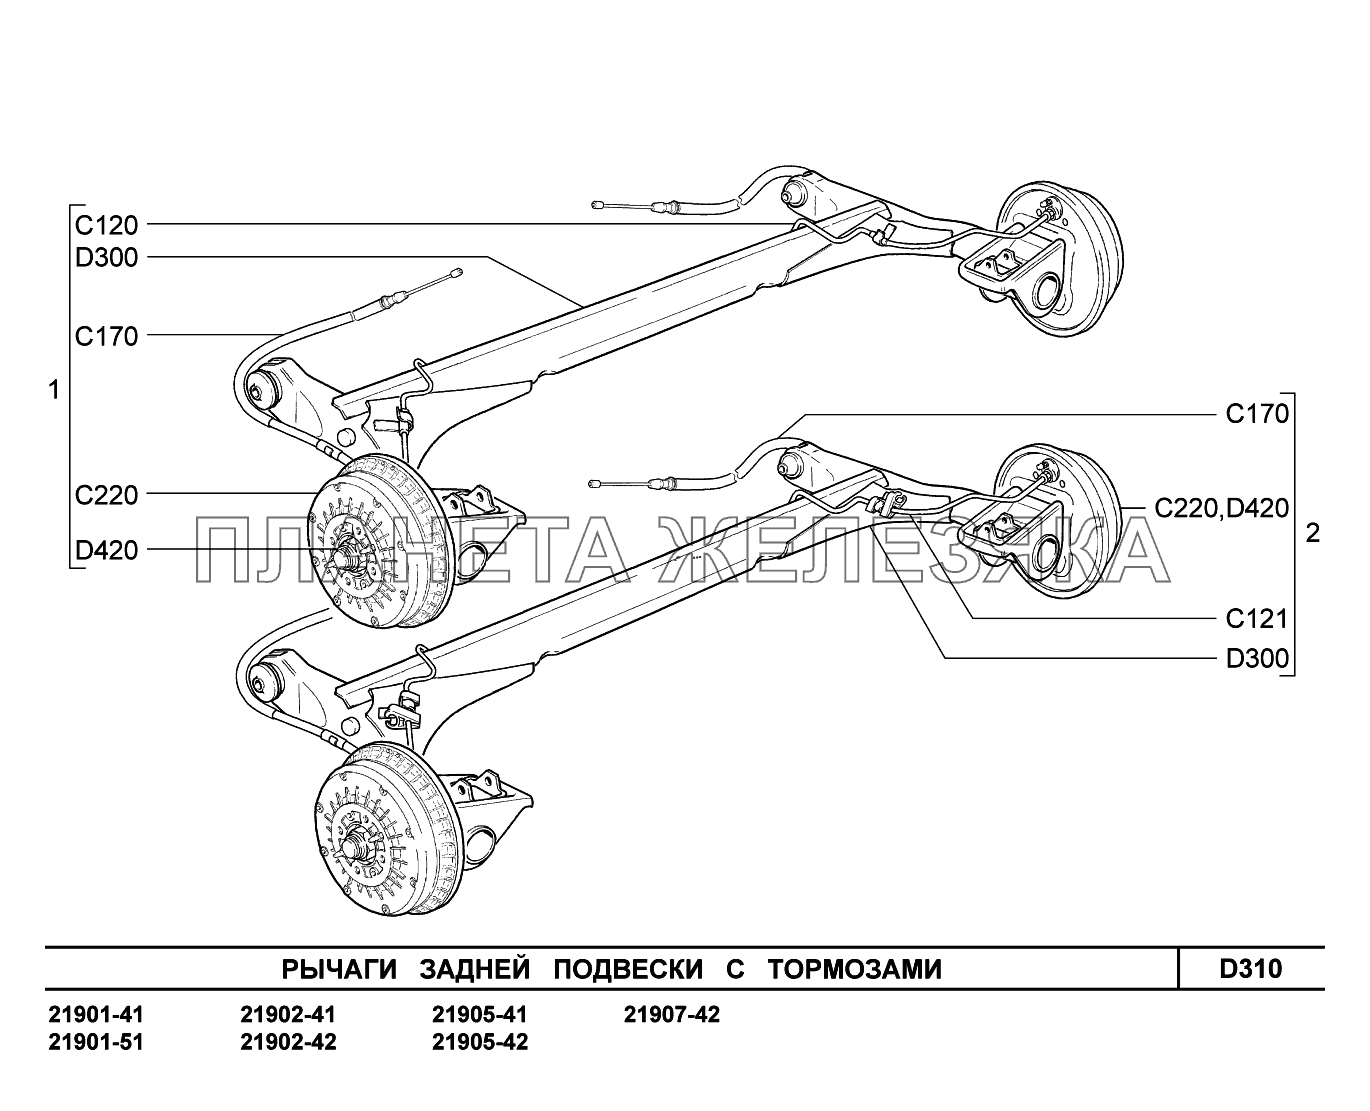 D310. Рычаги задней подвески с тормозами Lada Granta-2190